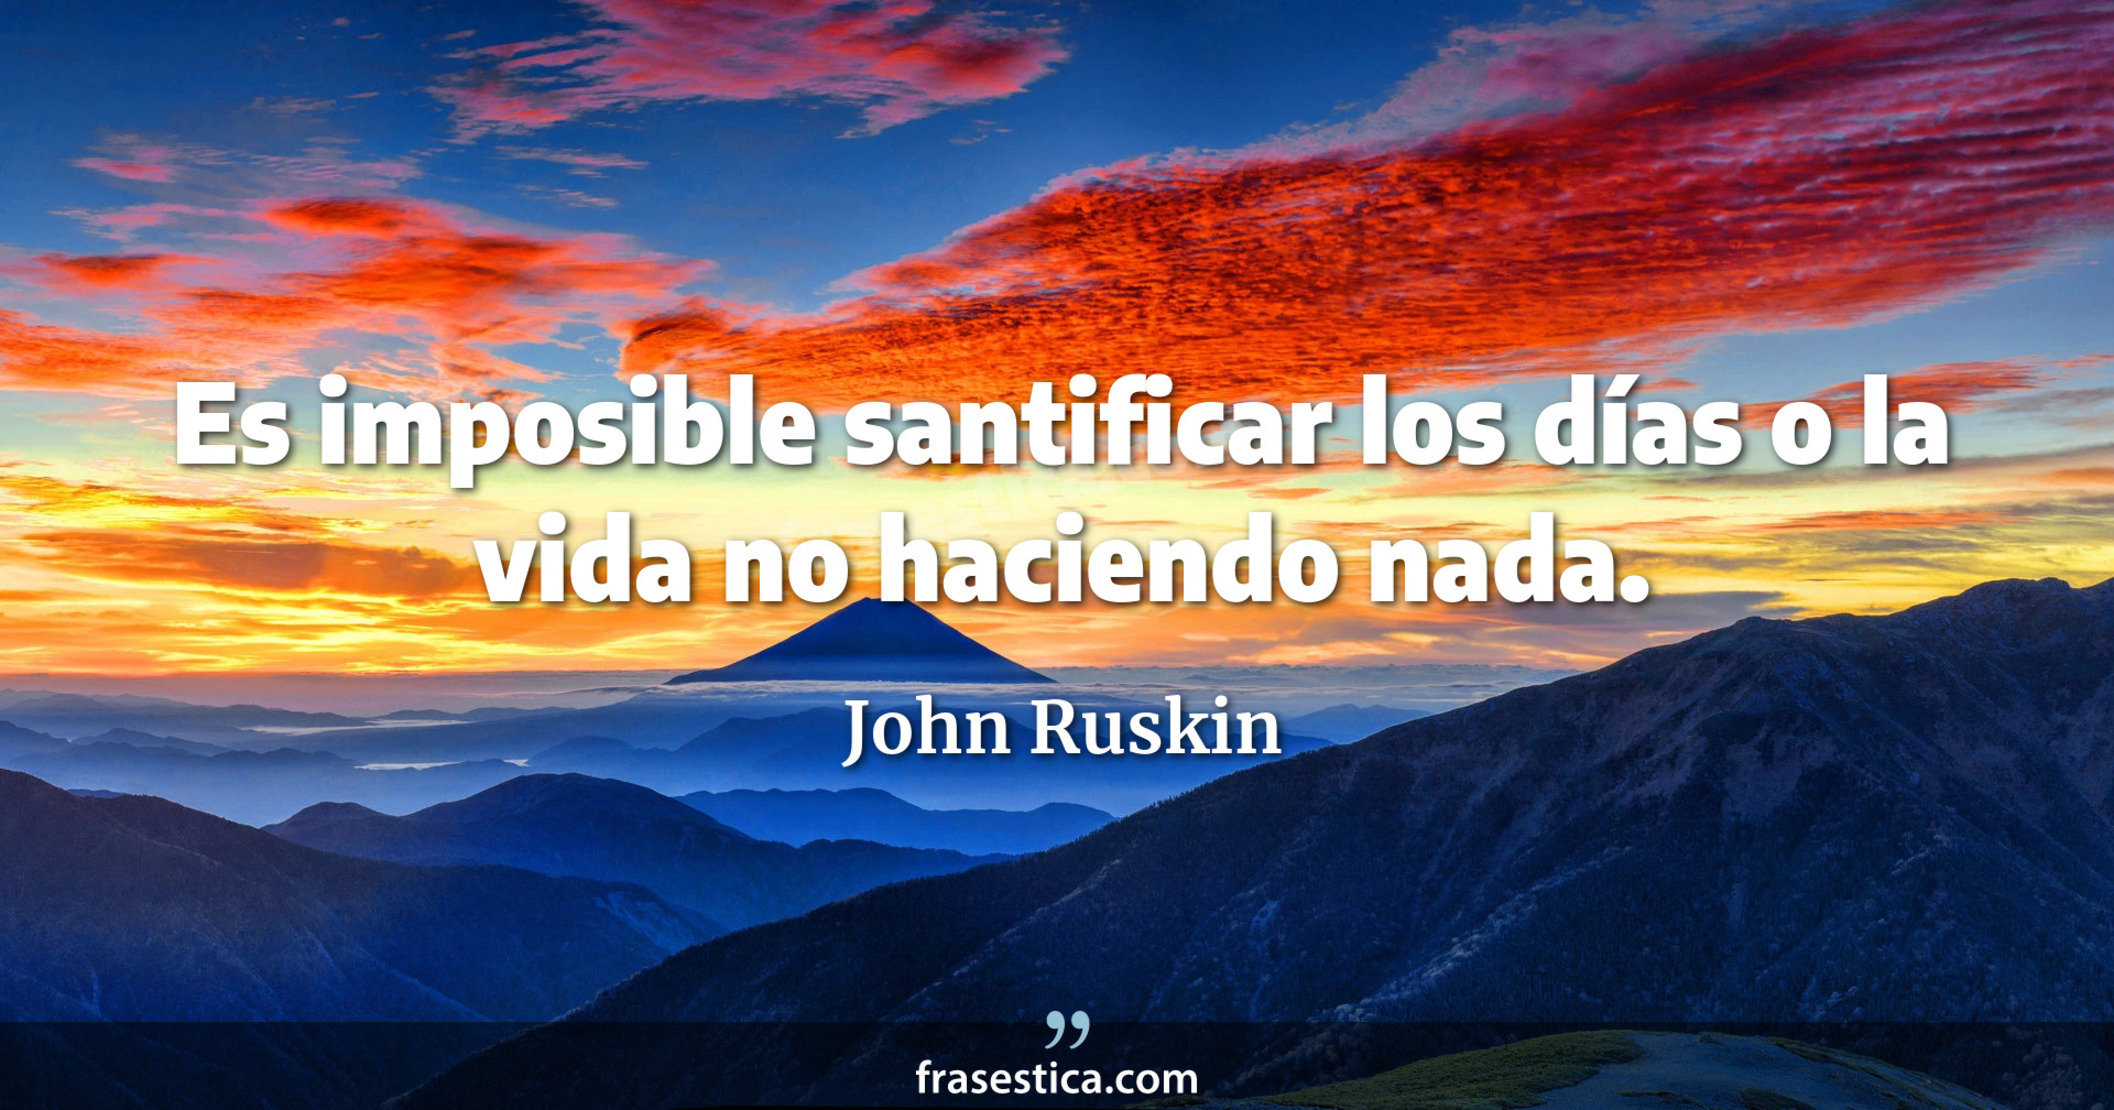 Es imposible santificar los días o la vida no haciendo nada. - John Ruskin